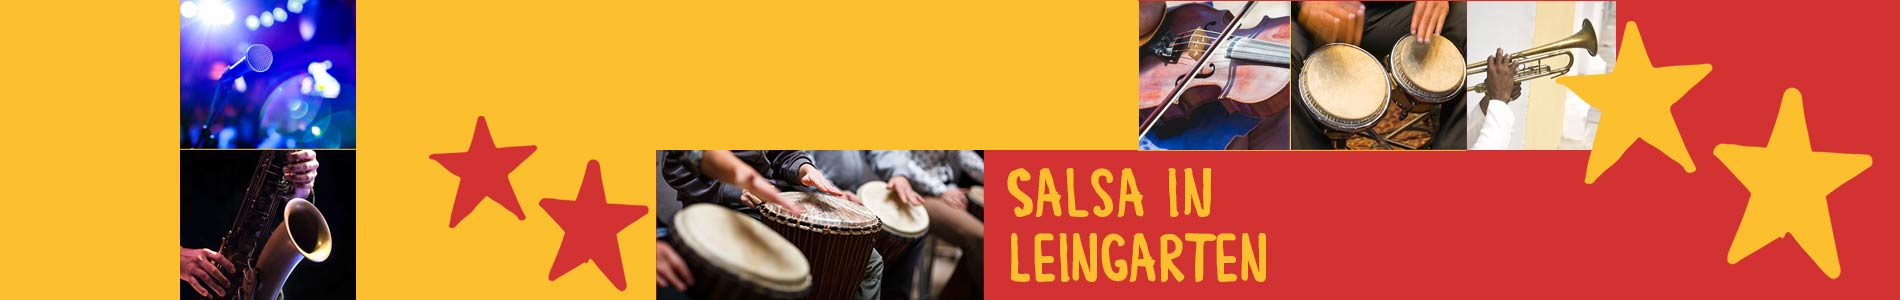 Salsa in Leingarten – Salsa lernen und tanzen, Tanzkurse, Partys, Veranstaltungen